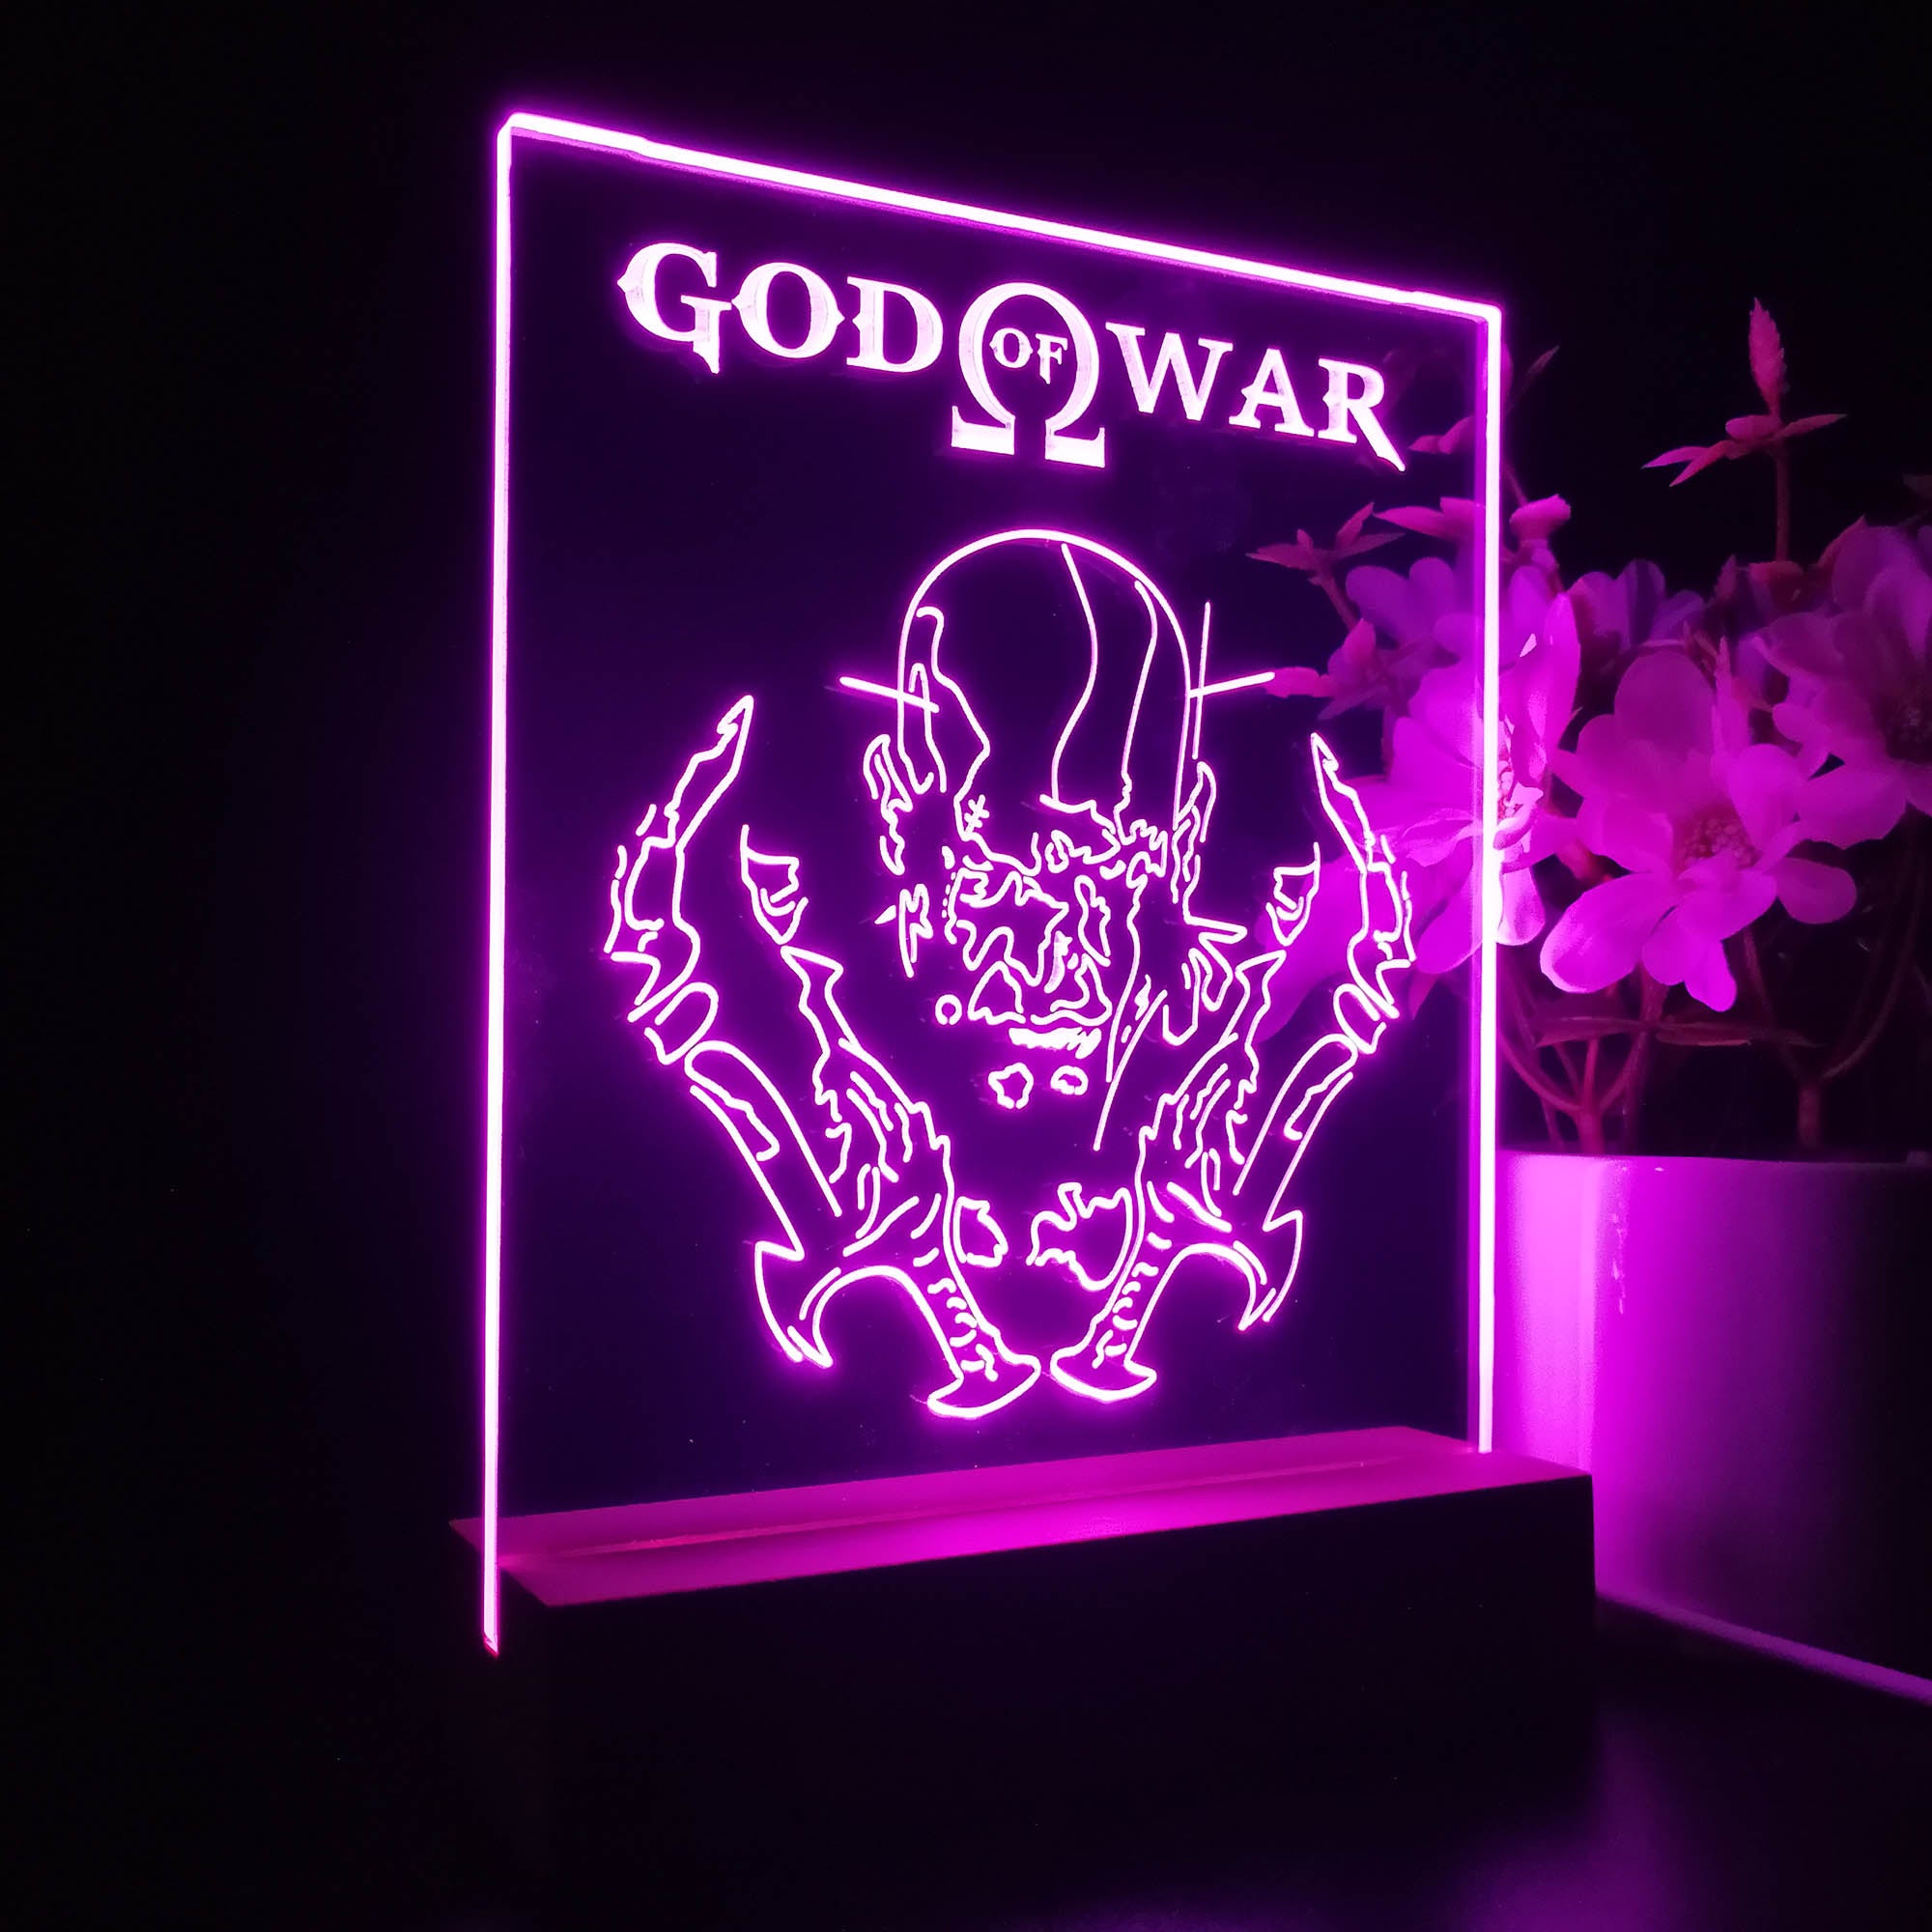 Weird light effect in God of War